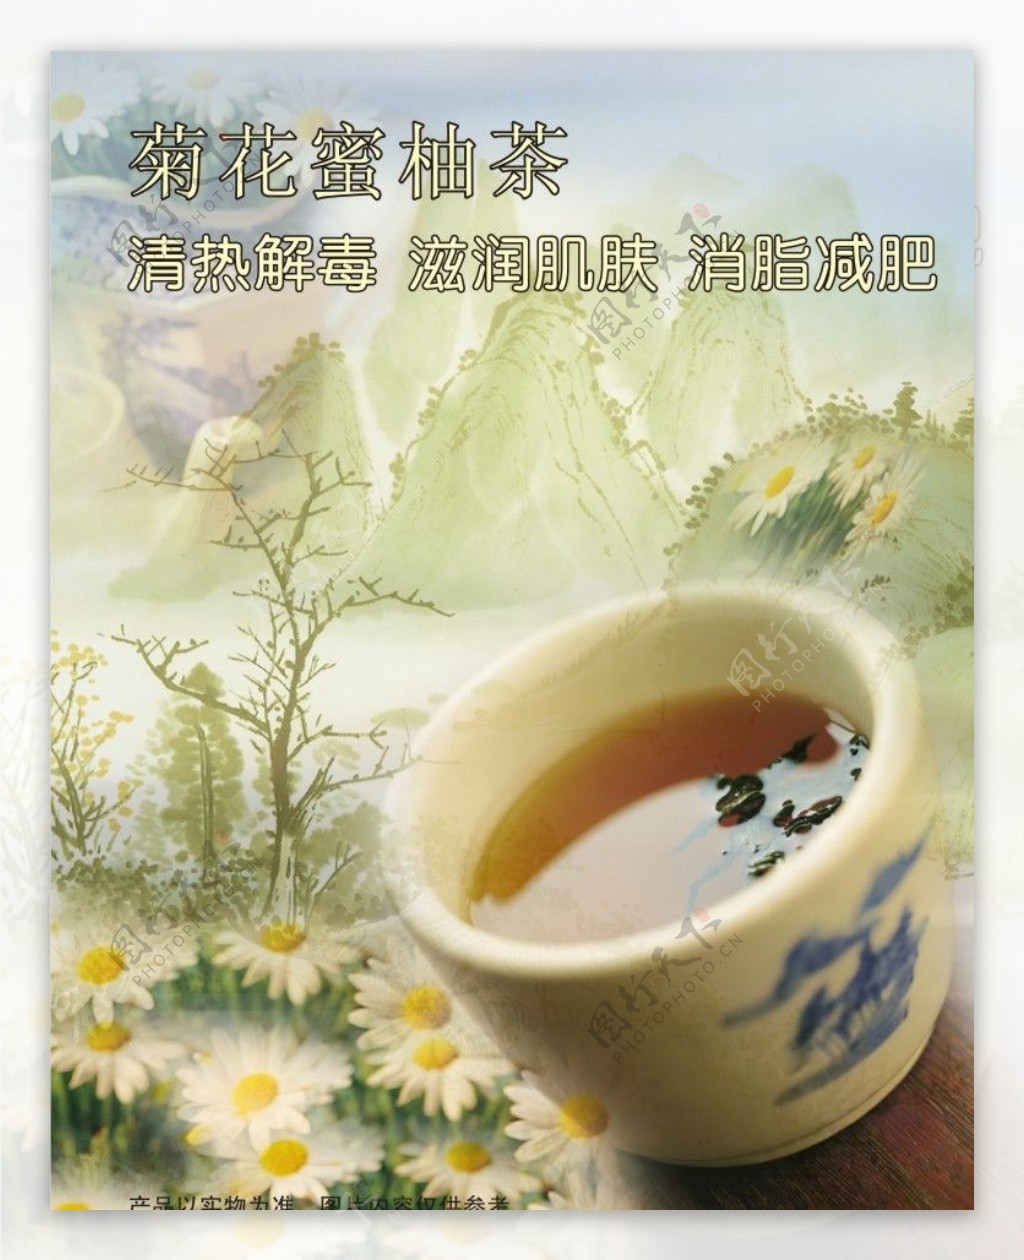 菊花柚子茶图片